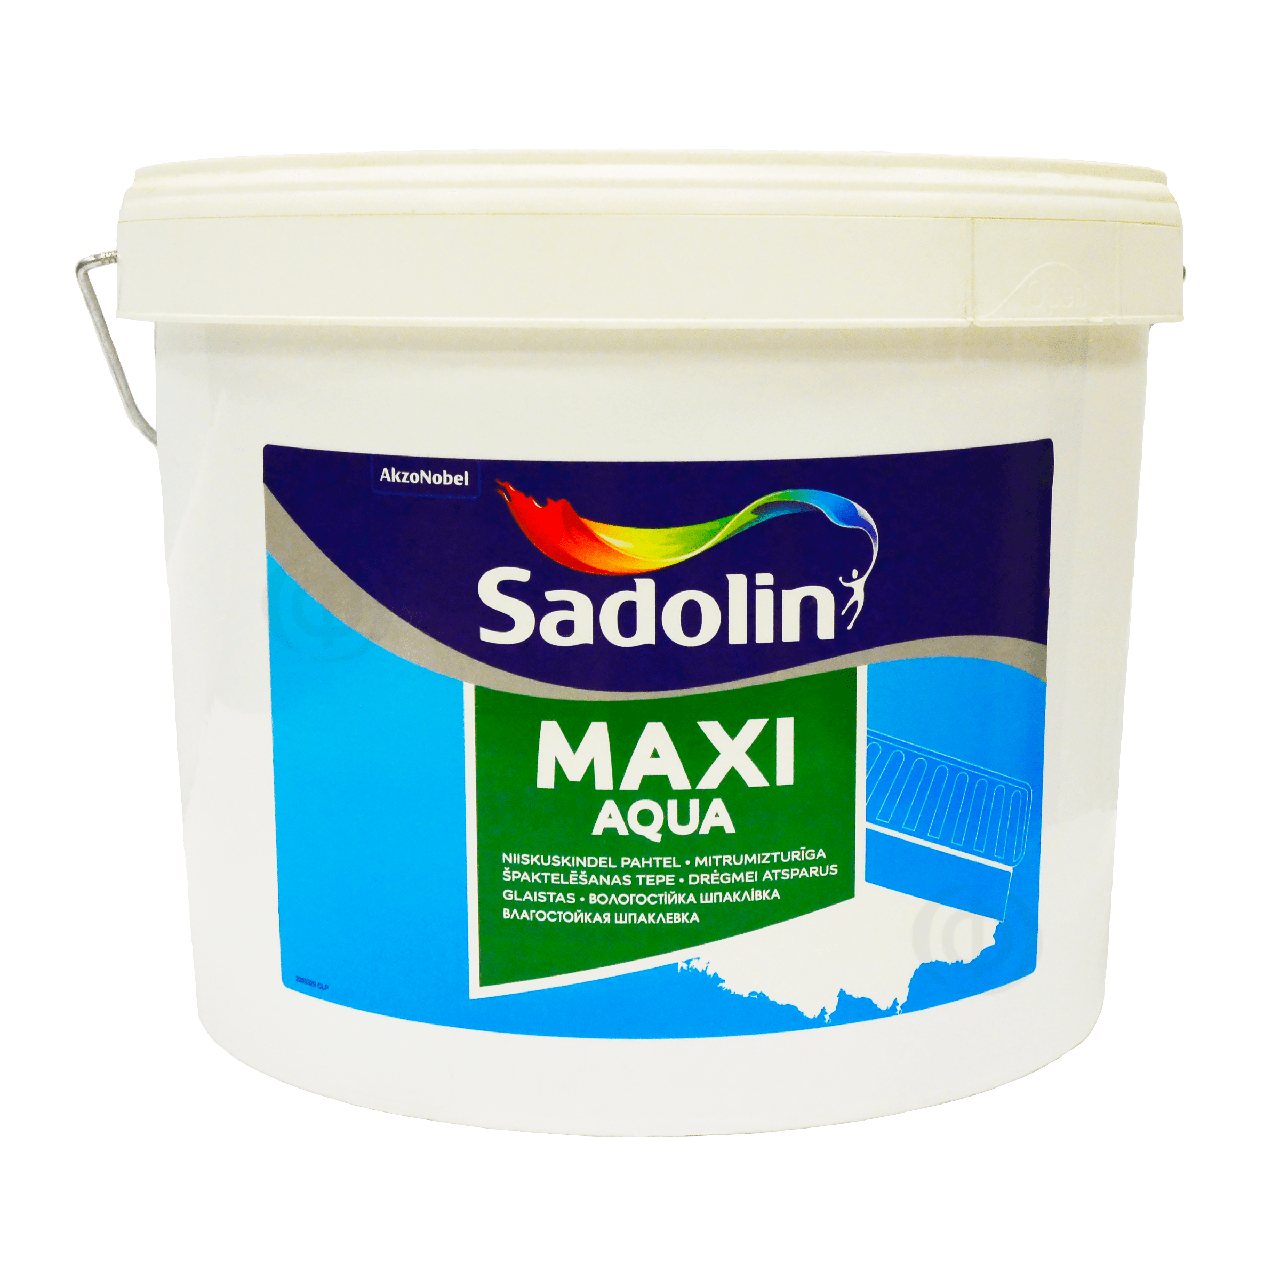 Дрібнозерниста вологостійка легка шпаклівка Sadolin Maxi Aqua для стін та стелі, сіра, 10 л